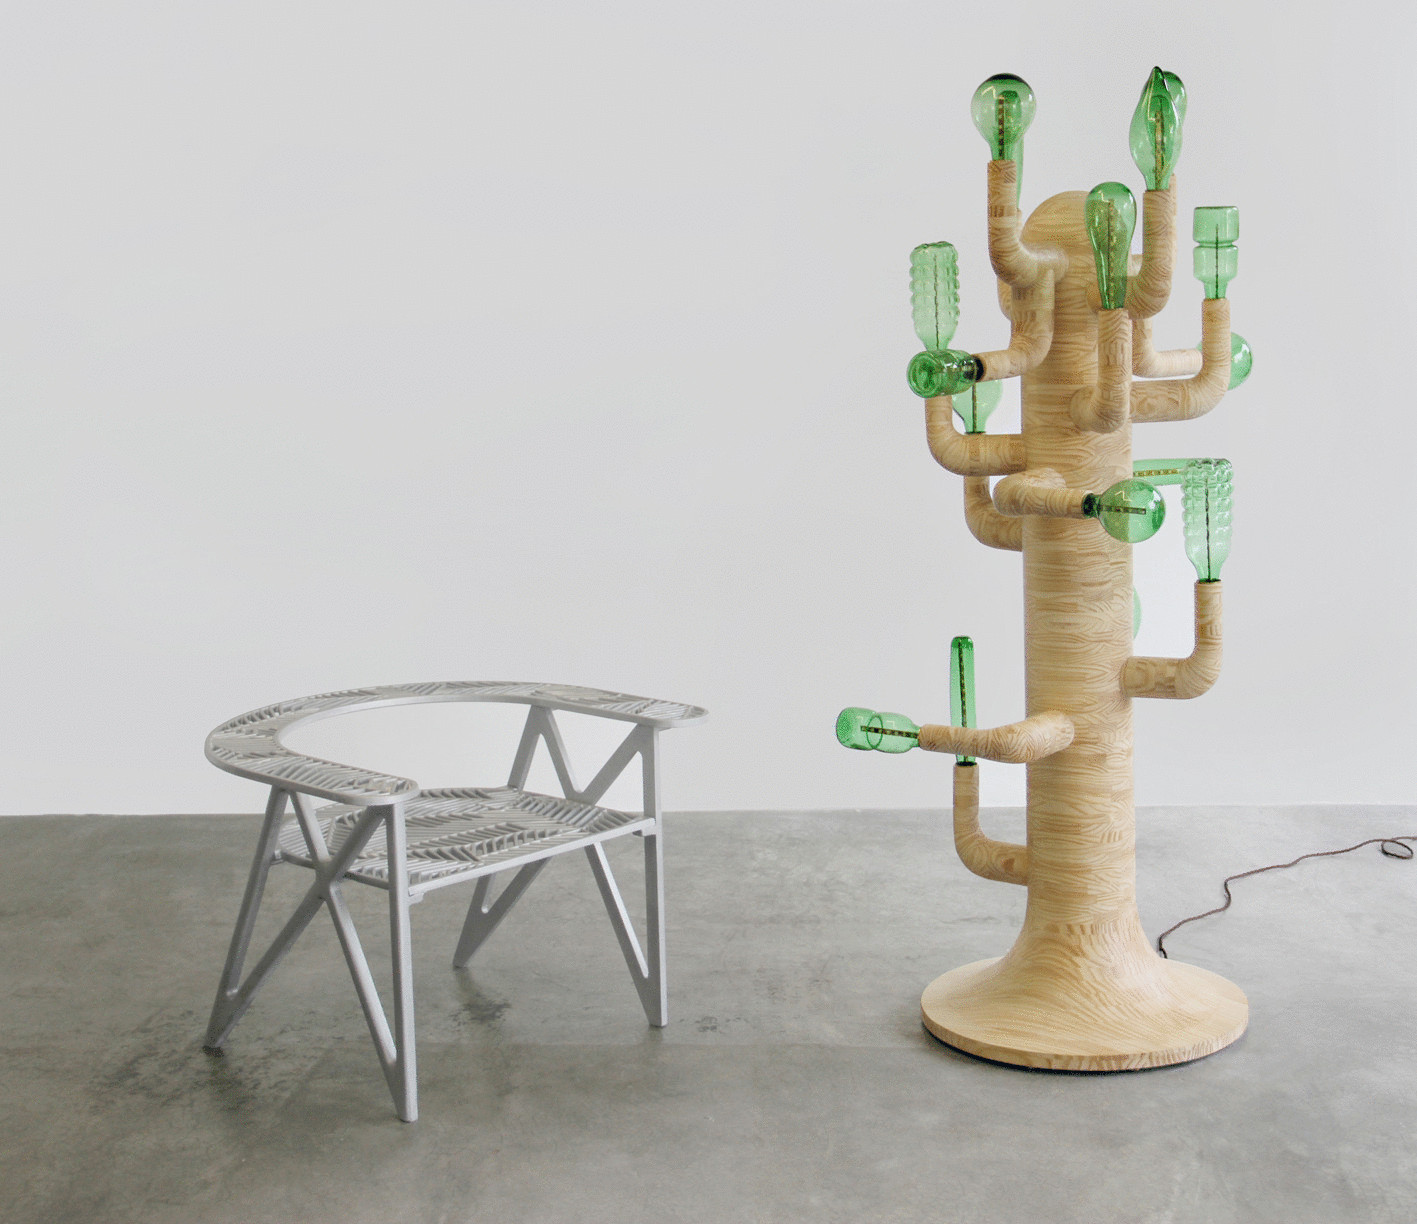 Креативная лампа-кактус из пивных бутылок создана в Бразилии